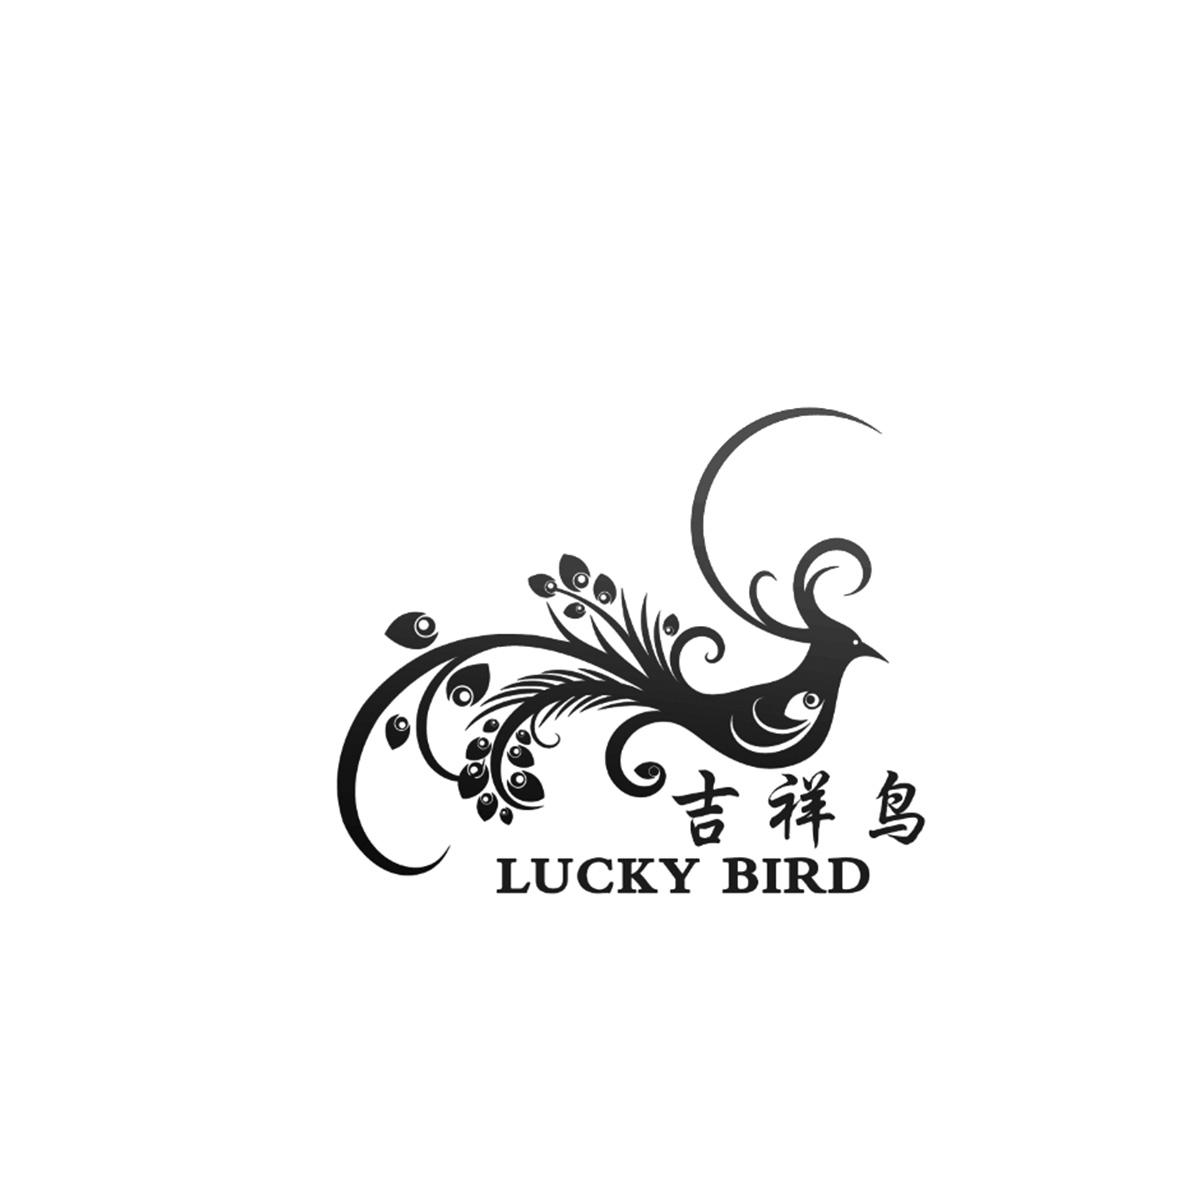 吉祥鸟 lucky bird 商标公告